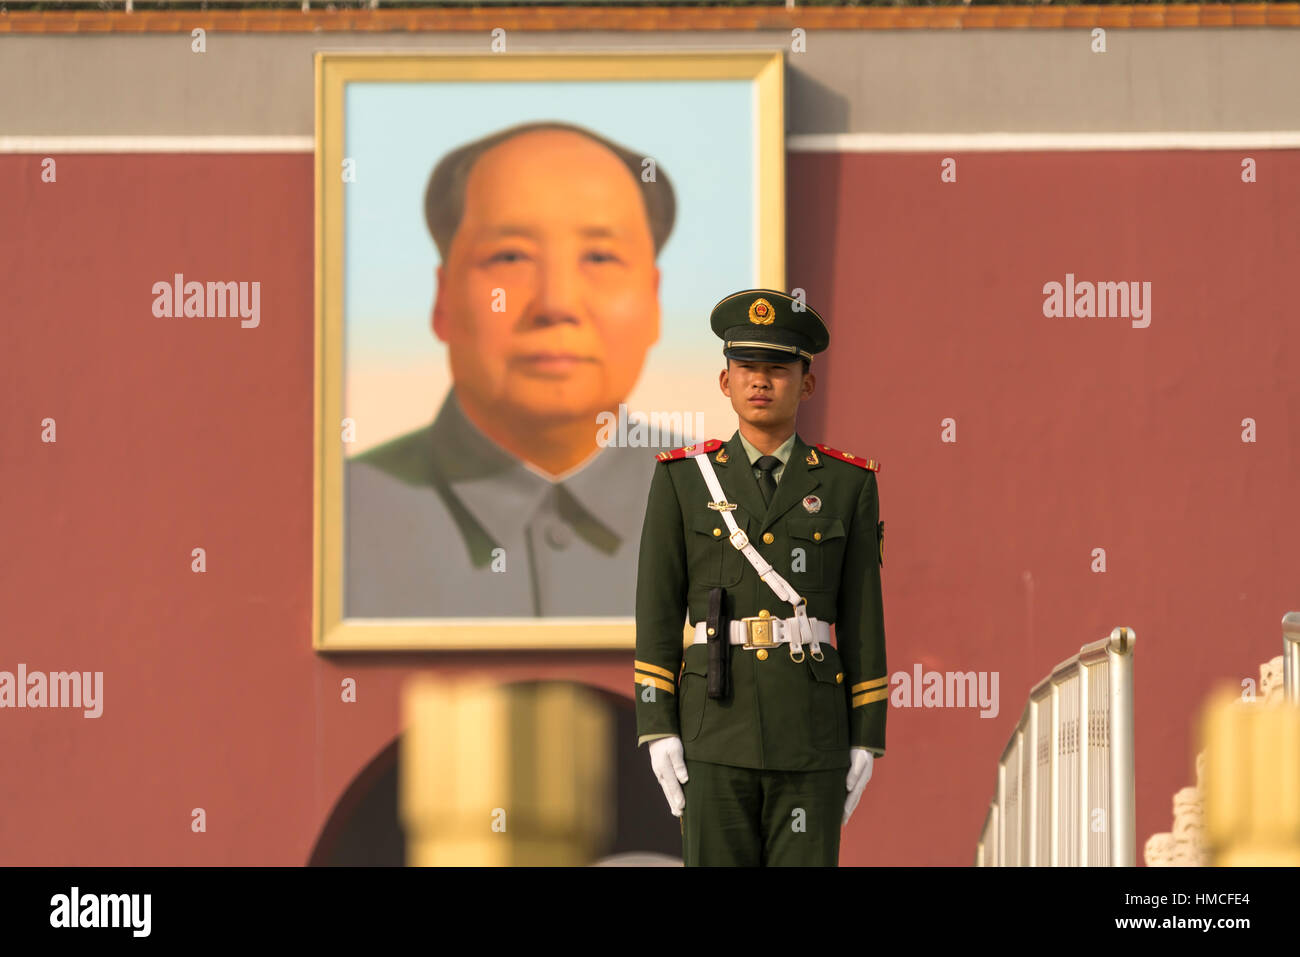 Riparo e il ritratto di Mao Zedong presso la porta di Tiananmen, Pechino, Repubblica Popolare di Cina e Asia Foto Stock